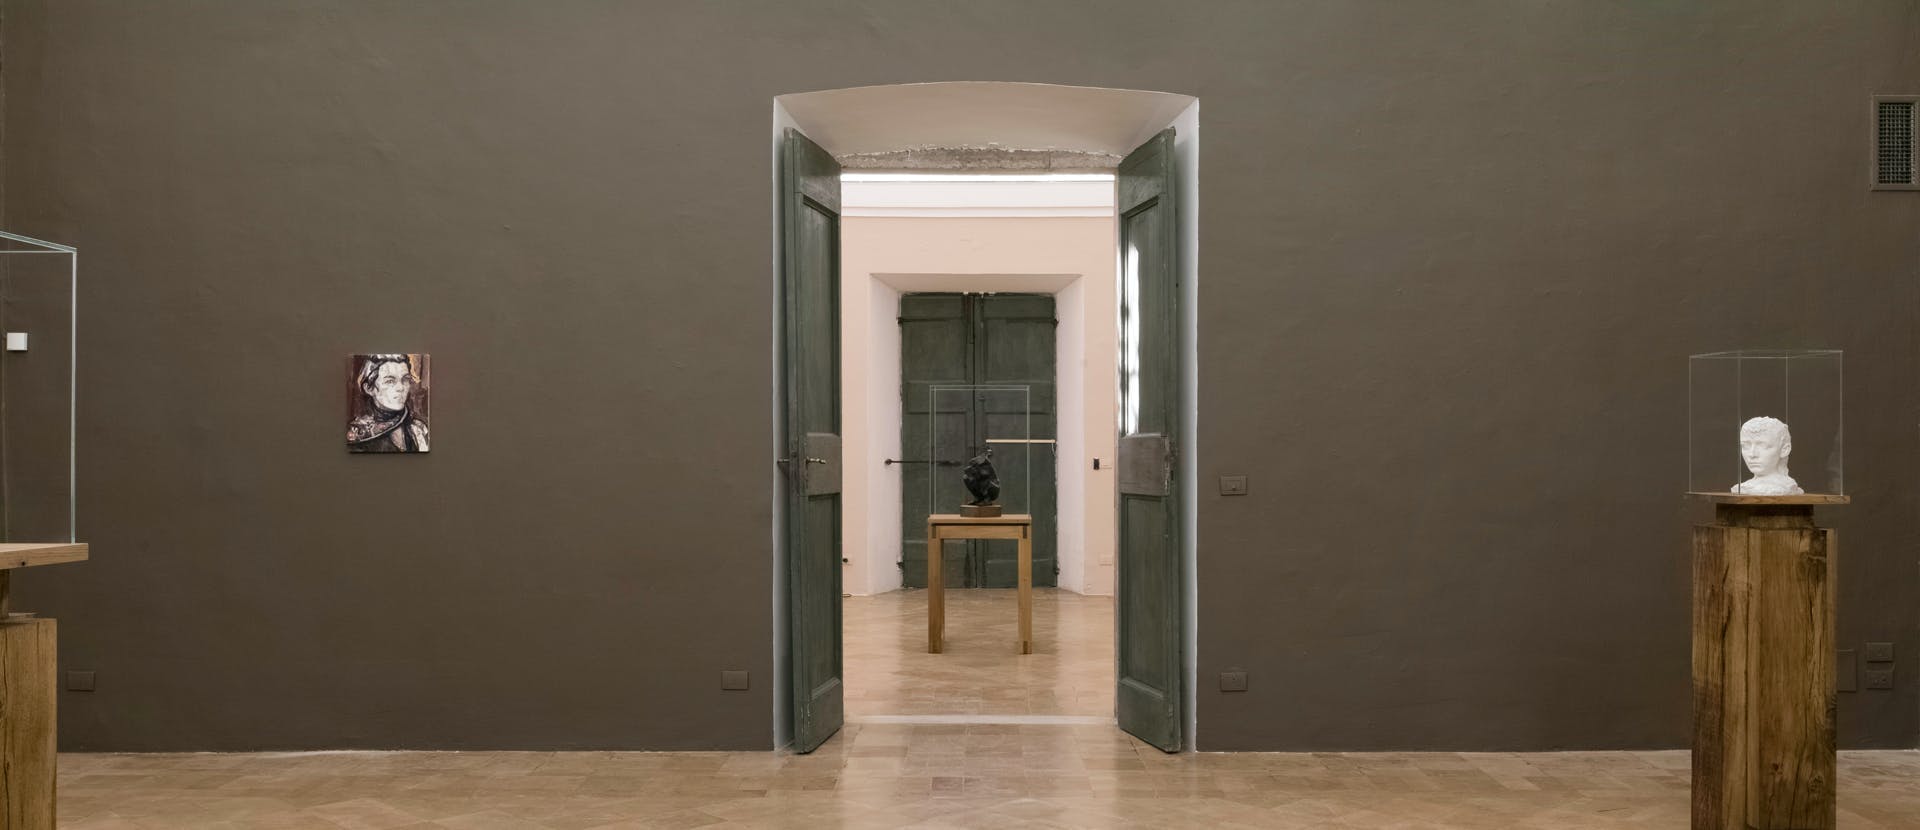 flooring floor corridor door